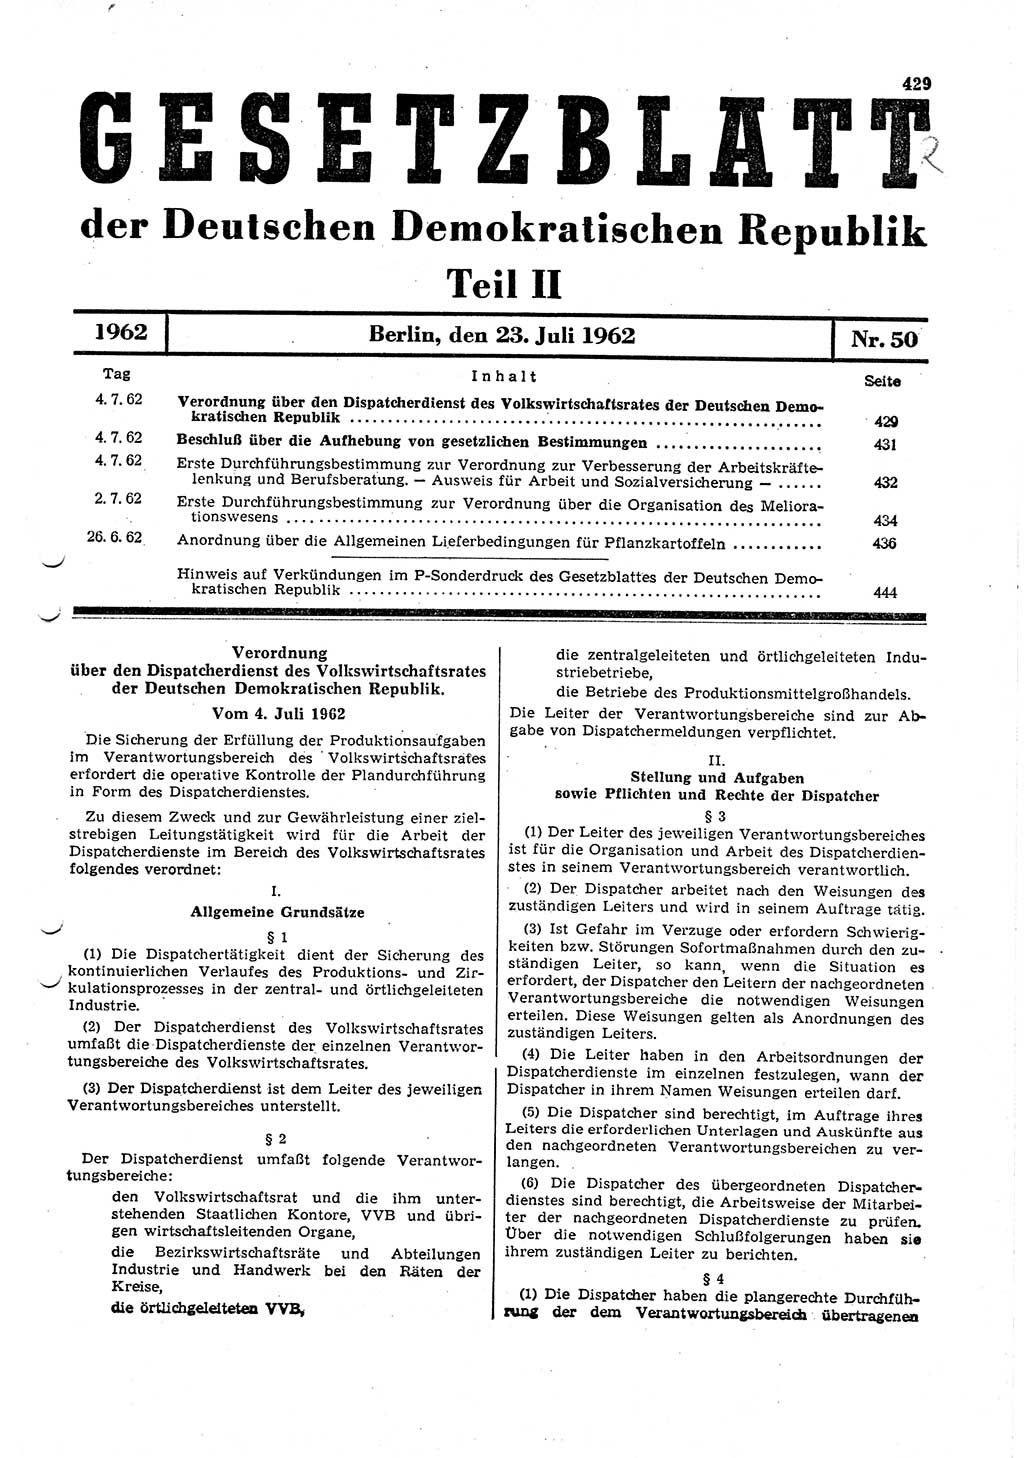 Gesetzblatt (GBl.) der Deutschen Demokratischen Republik (DDR) Teil ⅠⅠ 1962, Seite 429 (GBl. DDR ⅠⅠ 1962, S. 429)